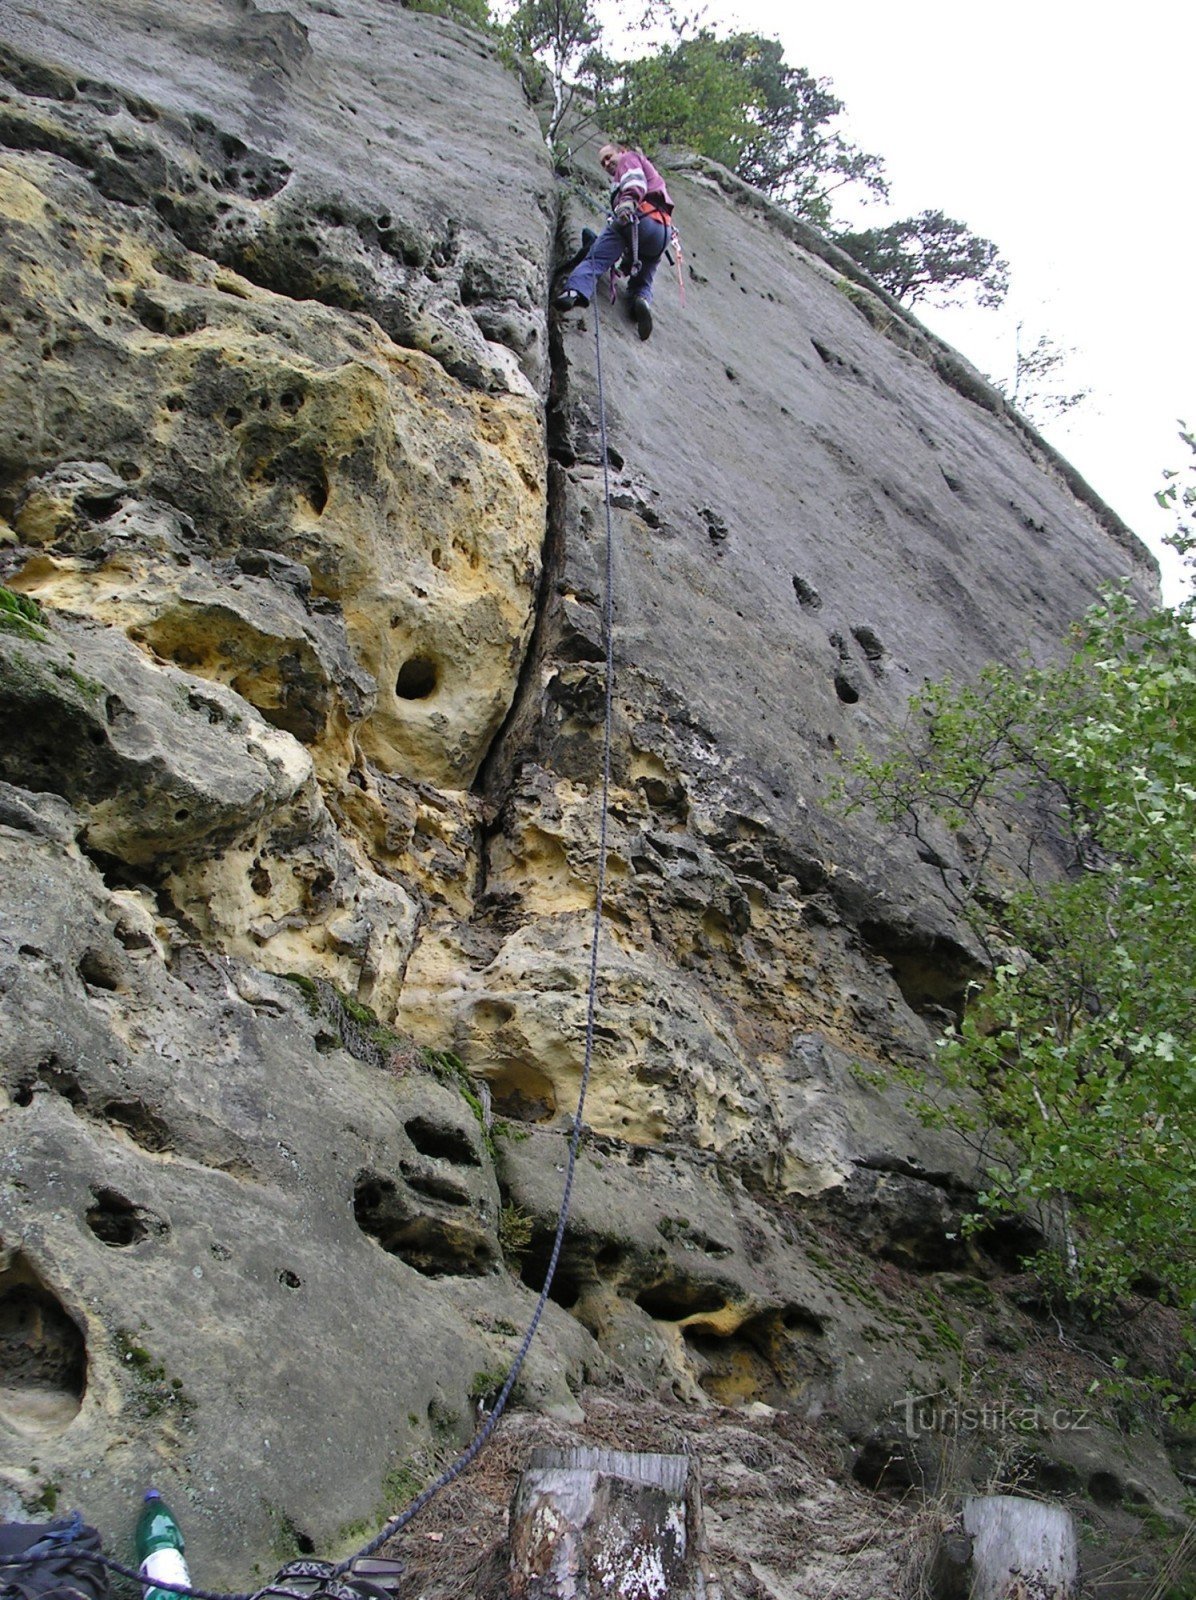 Перше сходження на Широкий камінь - Гліняк VIIb - Киса та Яна Резнікова